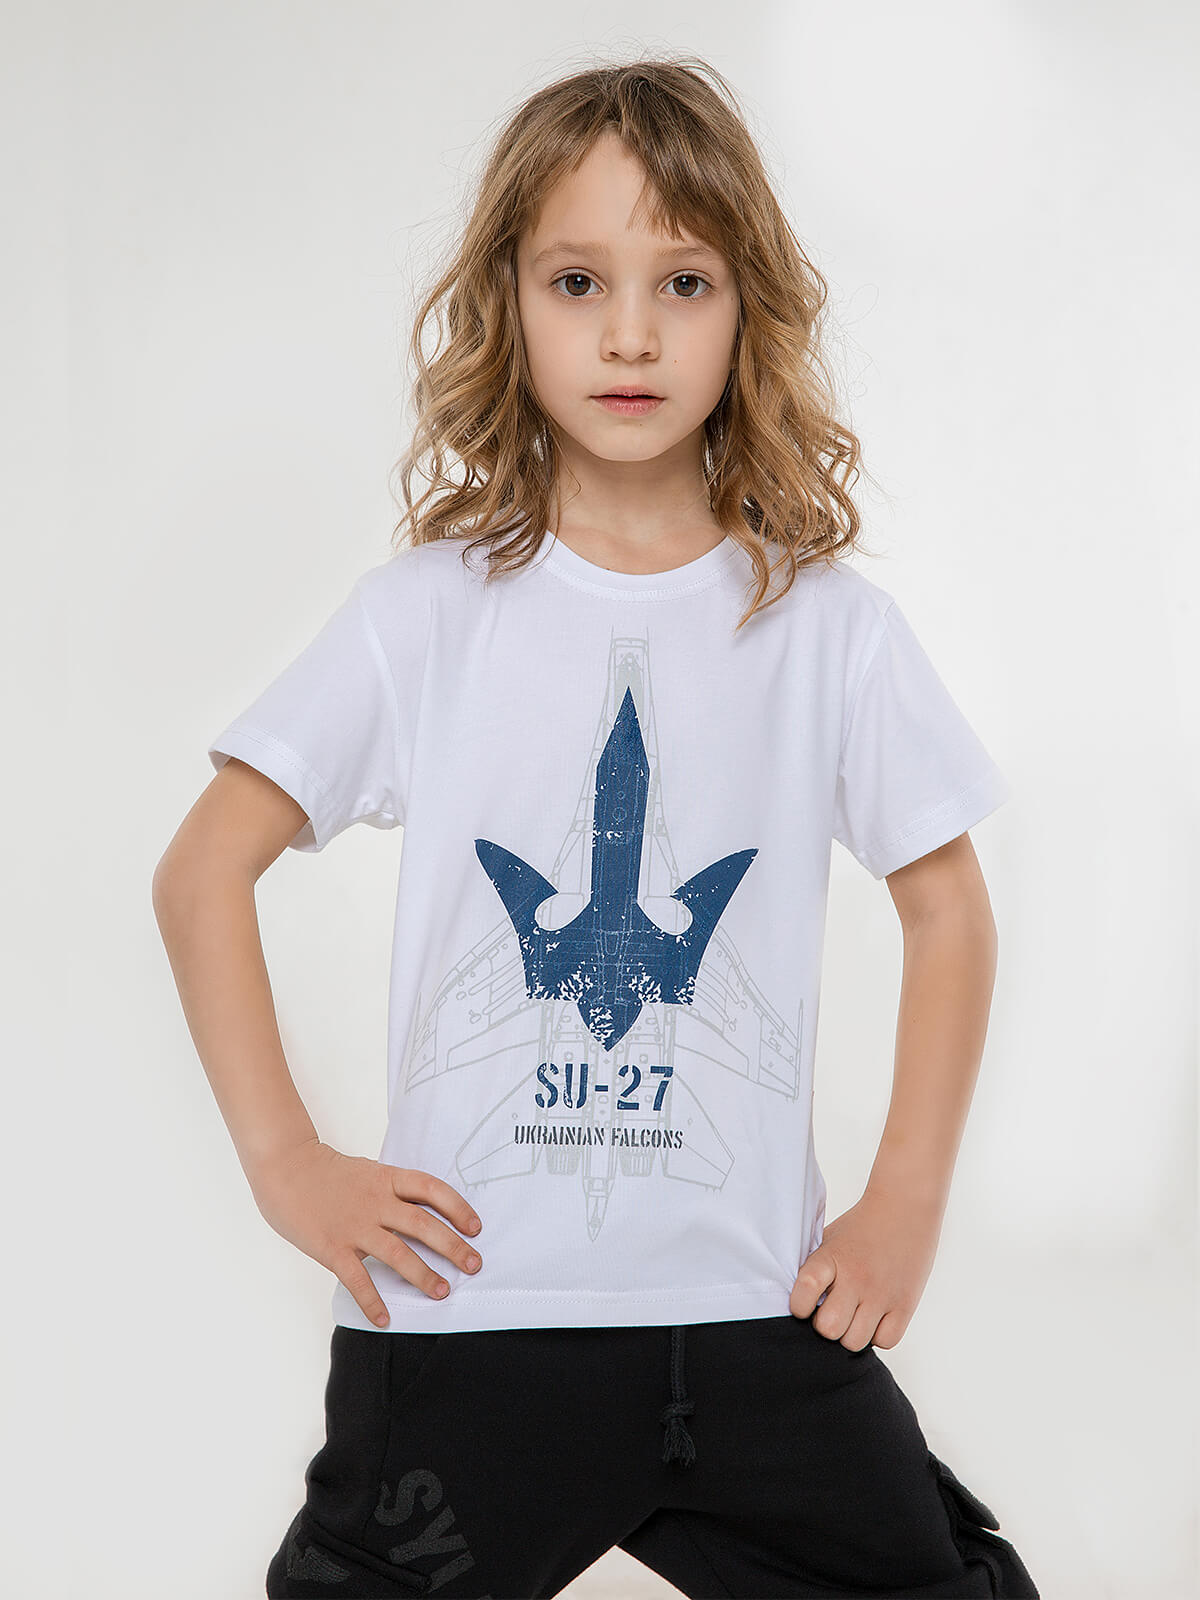 Дитяча Футболка Su-27. Колір білий. 95% бавовна, 5% спандекс  До футболки можна придбати подарункове упакування  Відтінки кольорів на вашому екрані можуть відрізнятися від кольору оригіналу.